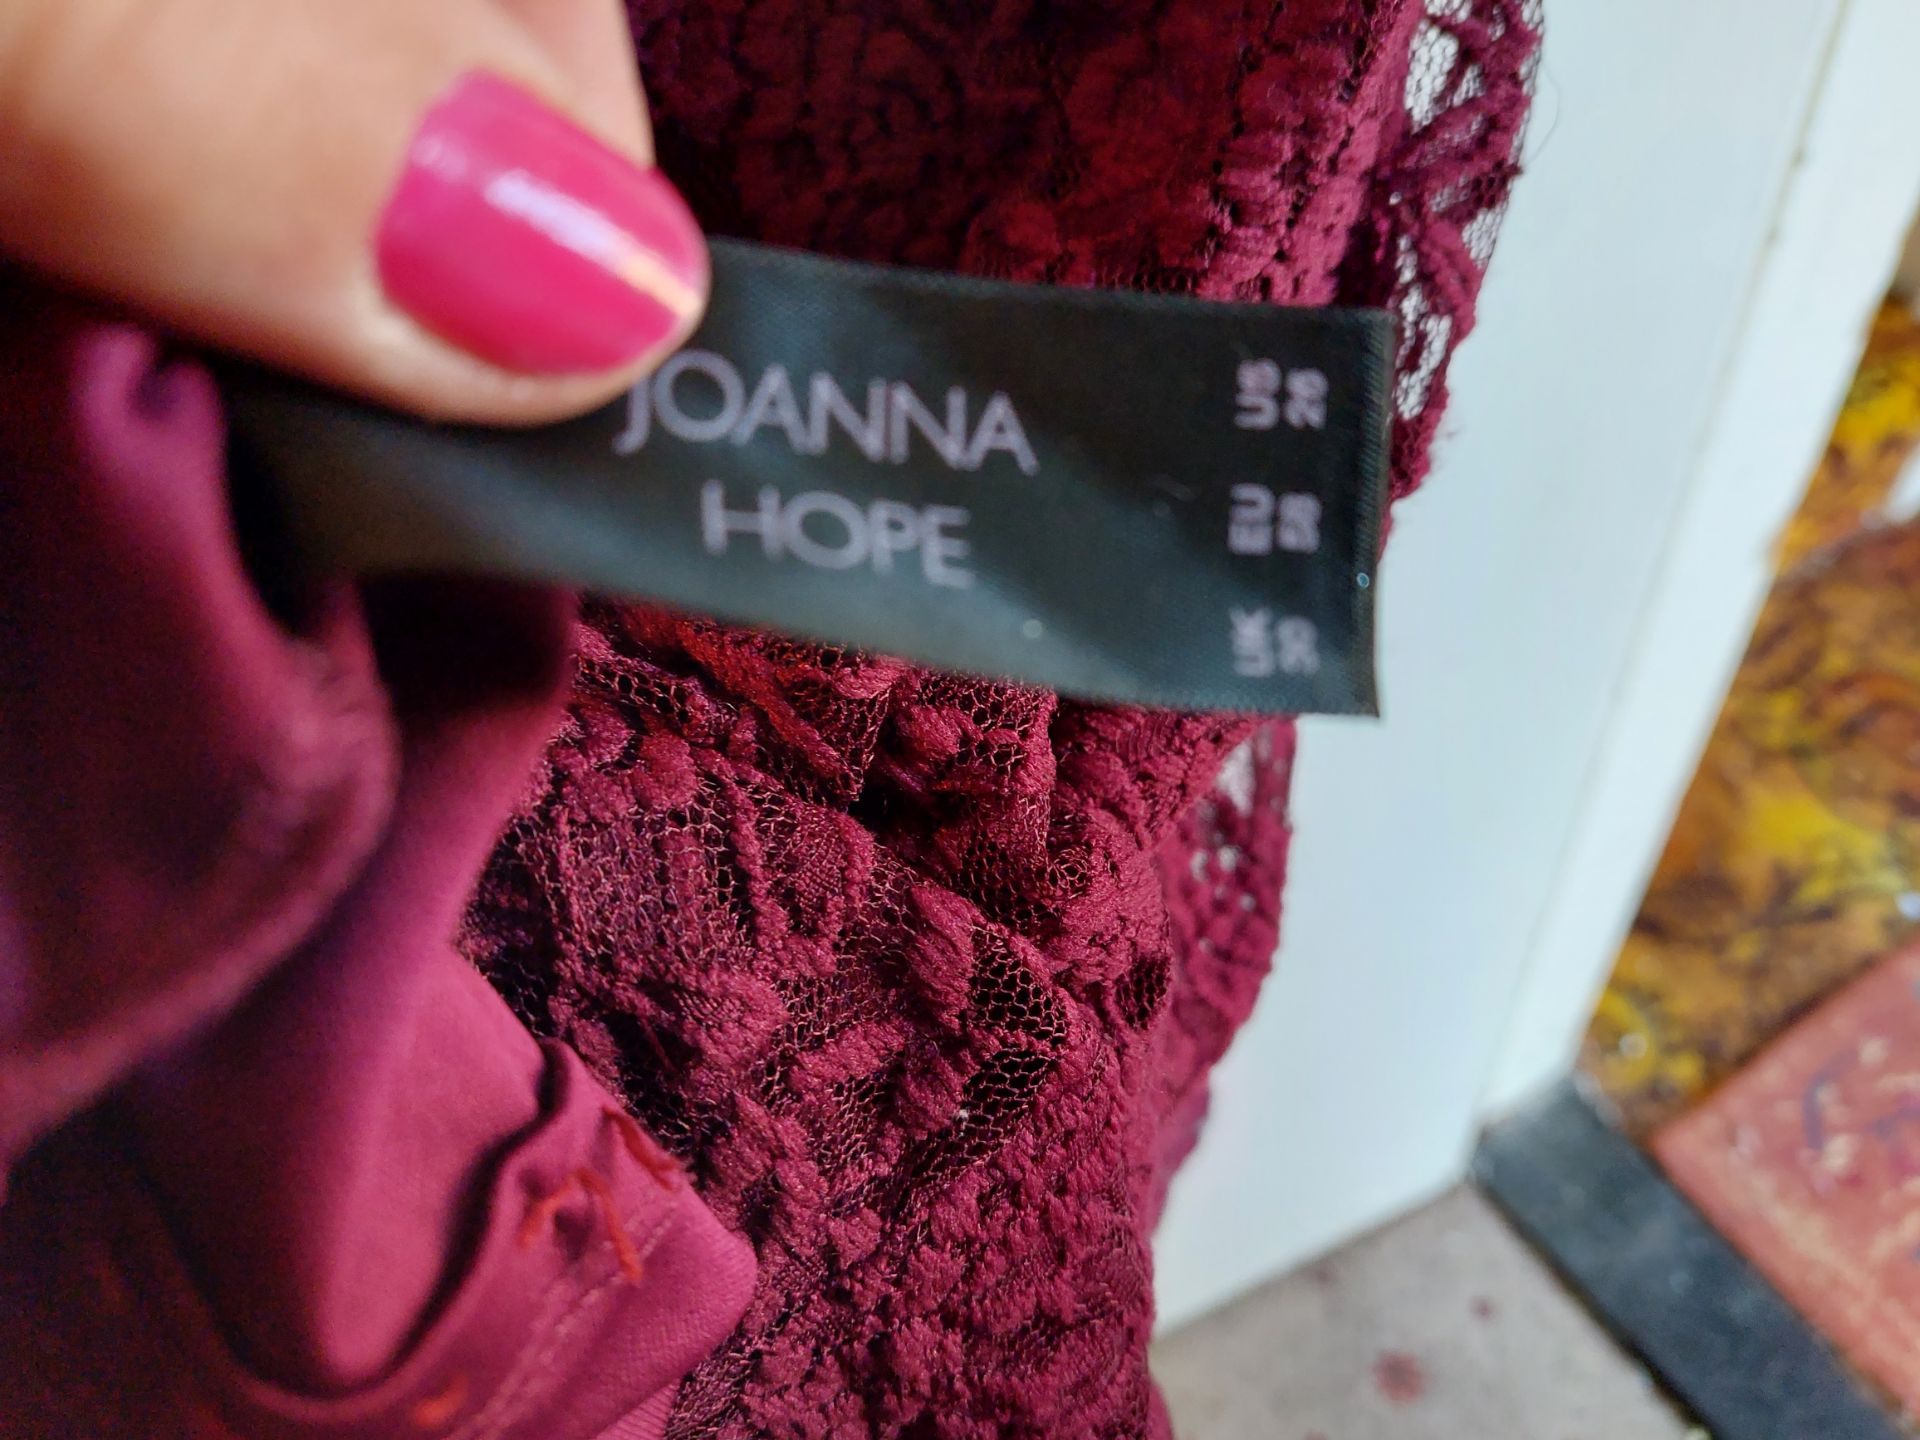 Evening Dress Joanna Hope Size 30 Black - Image 2 of 2